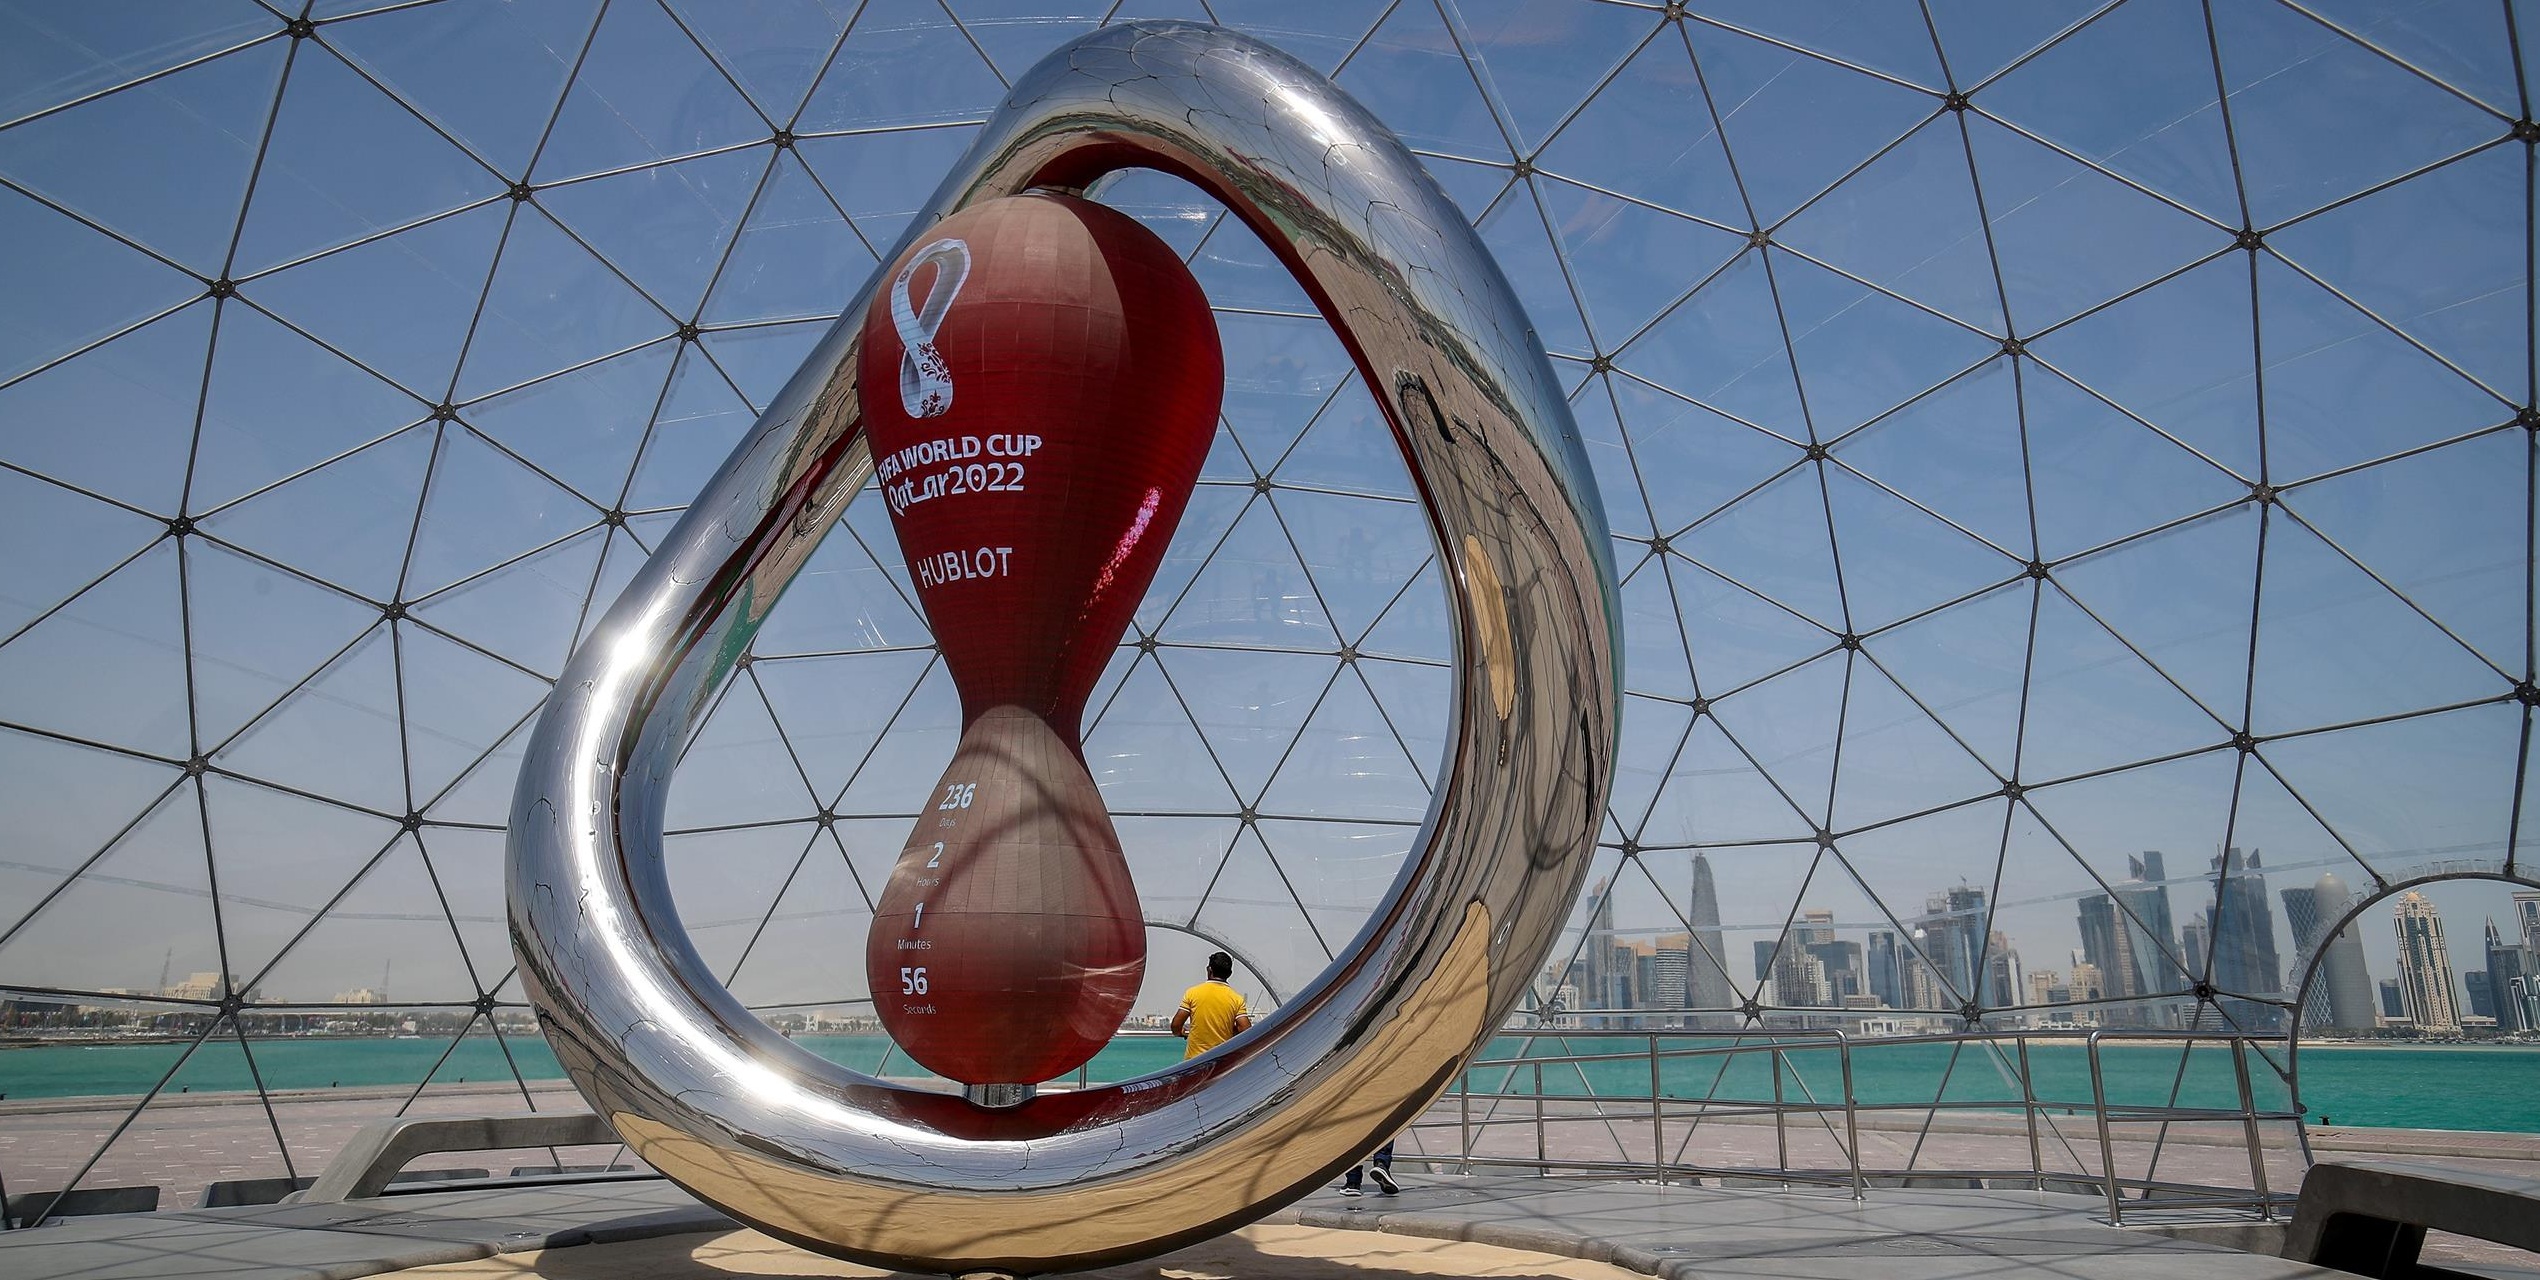 جام جهانی 2022 قطر